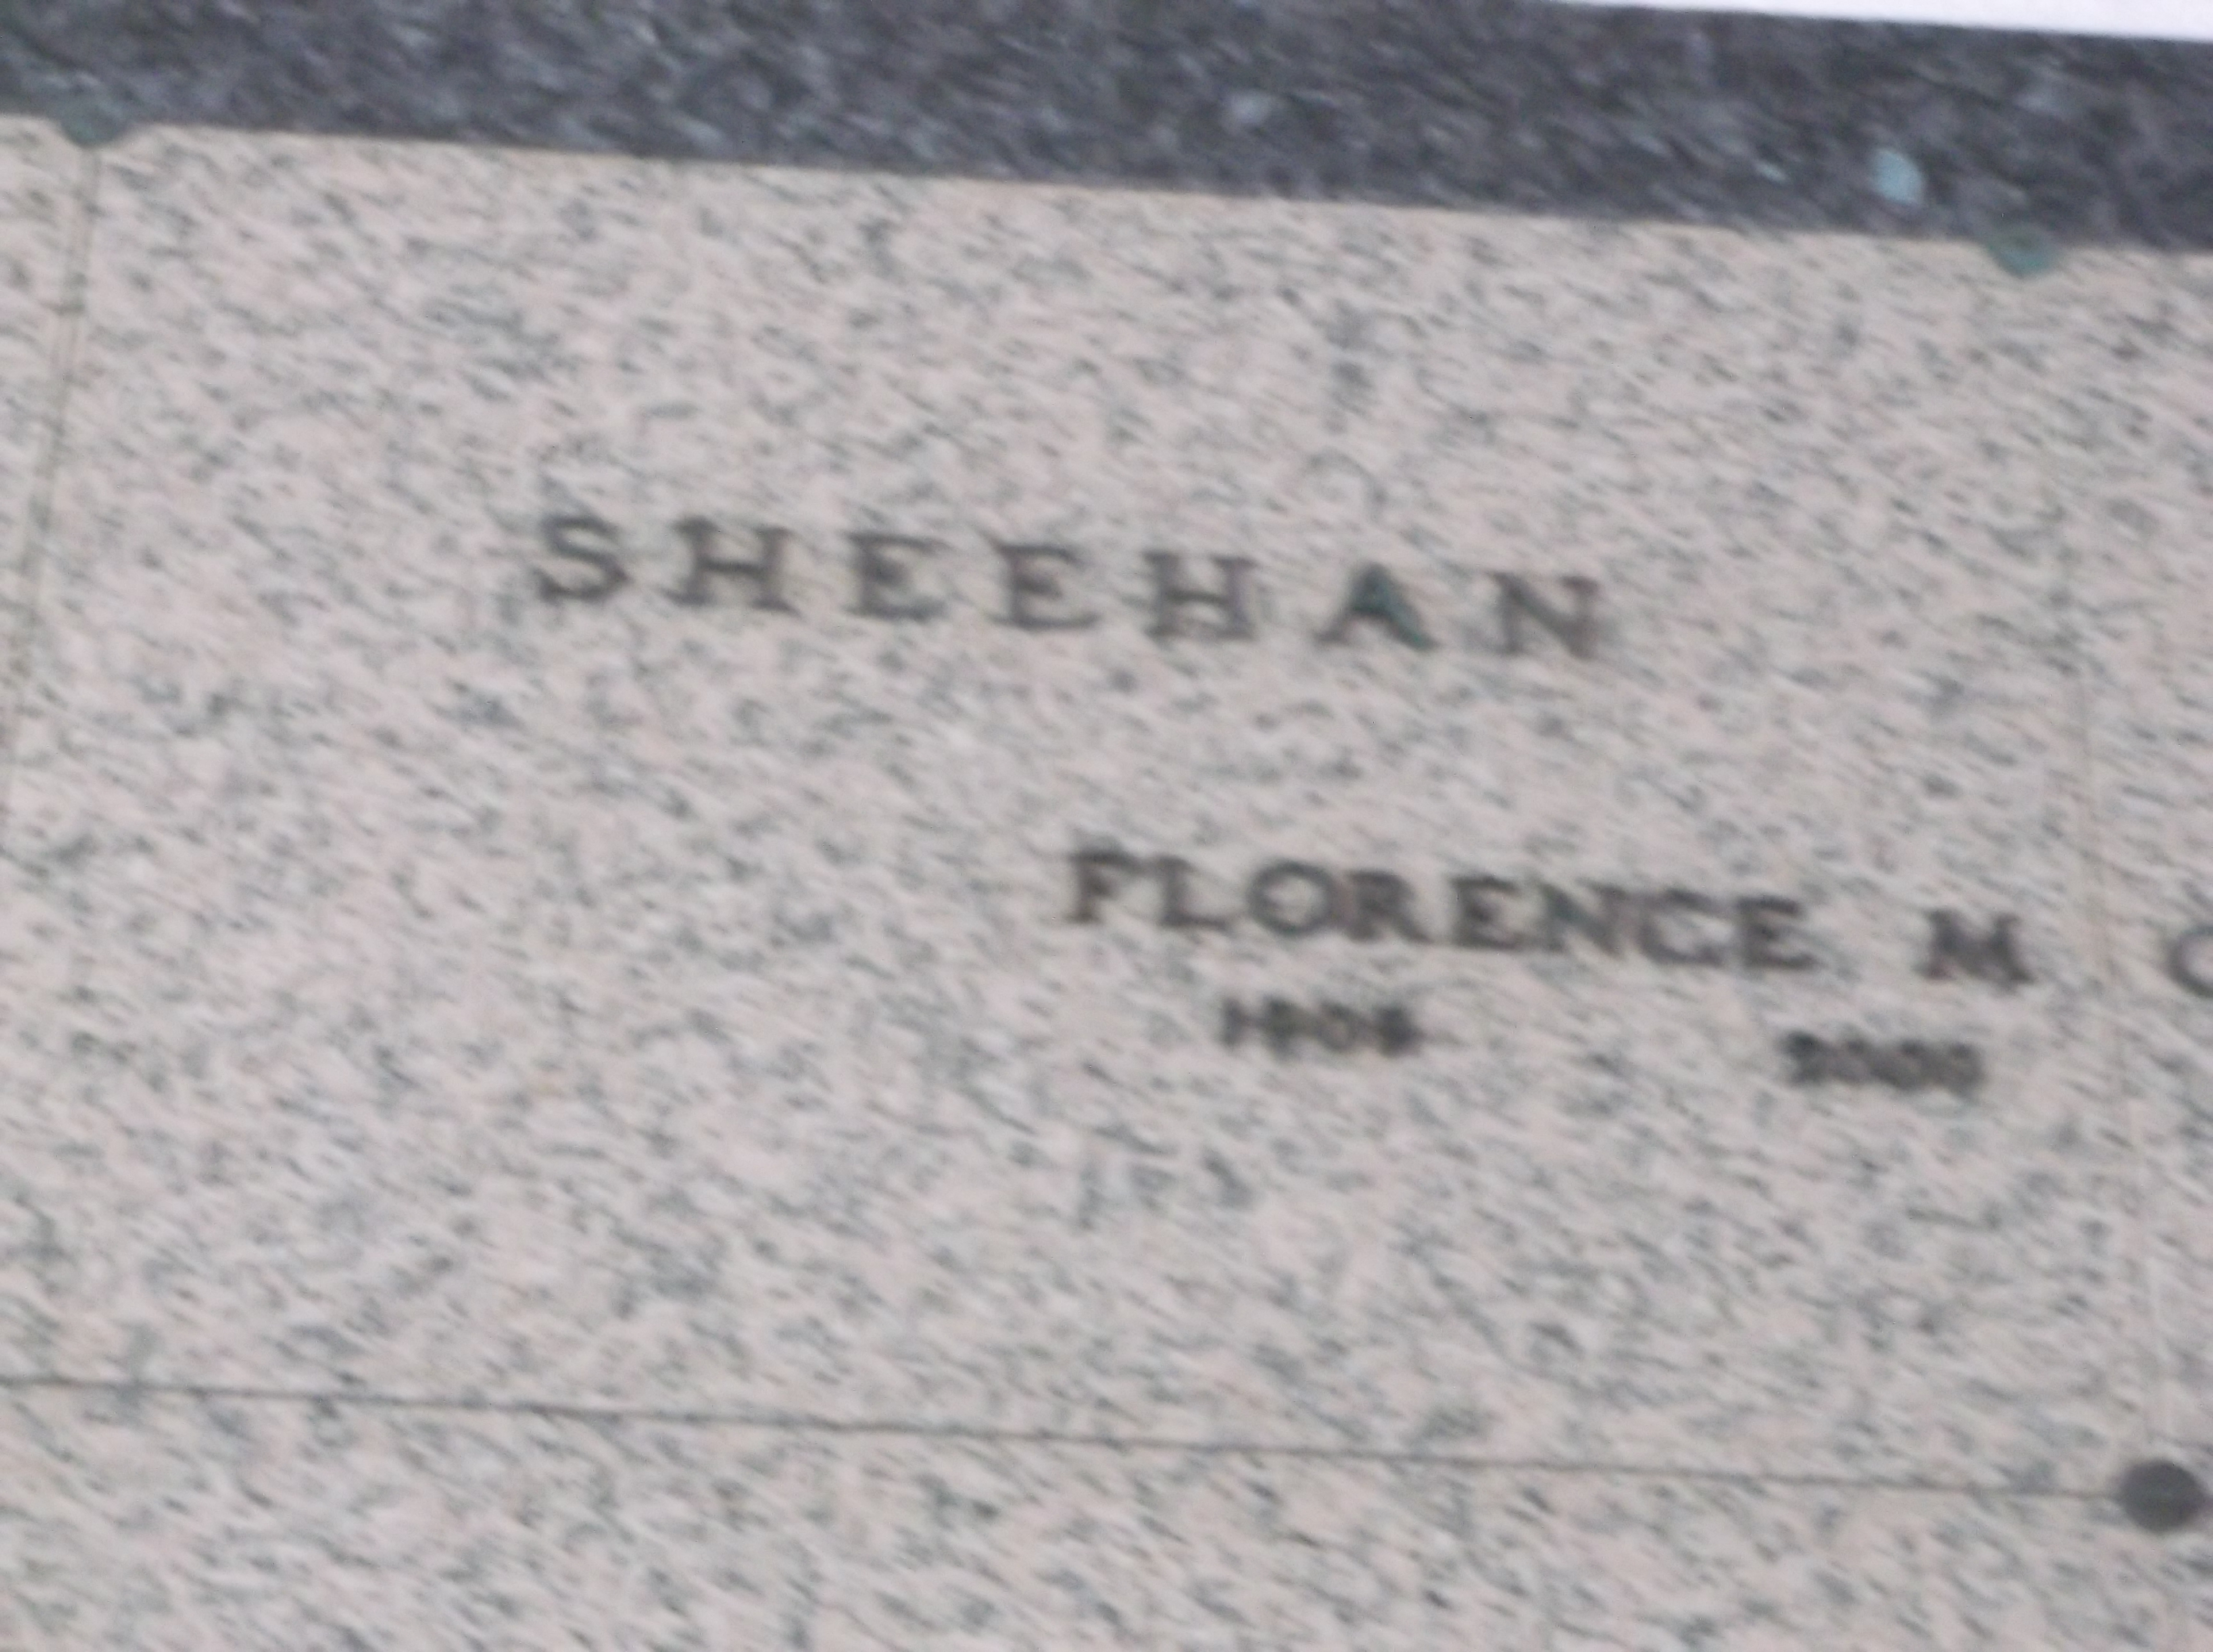 Florence M Sheehan